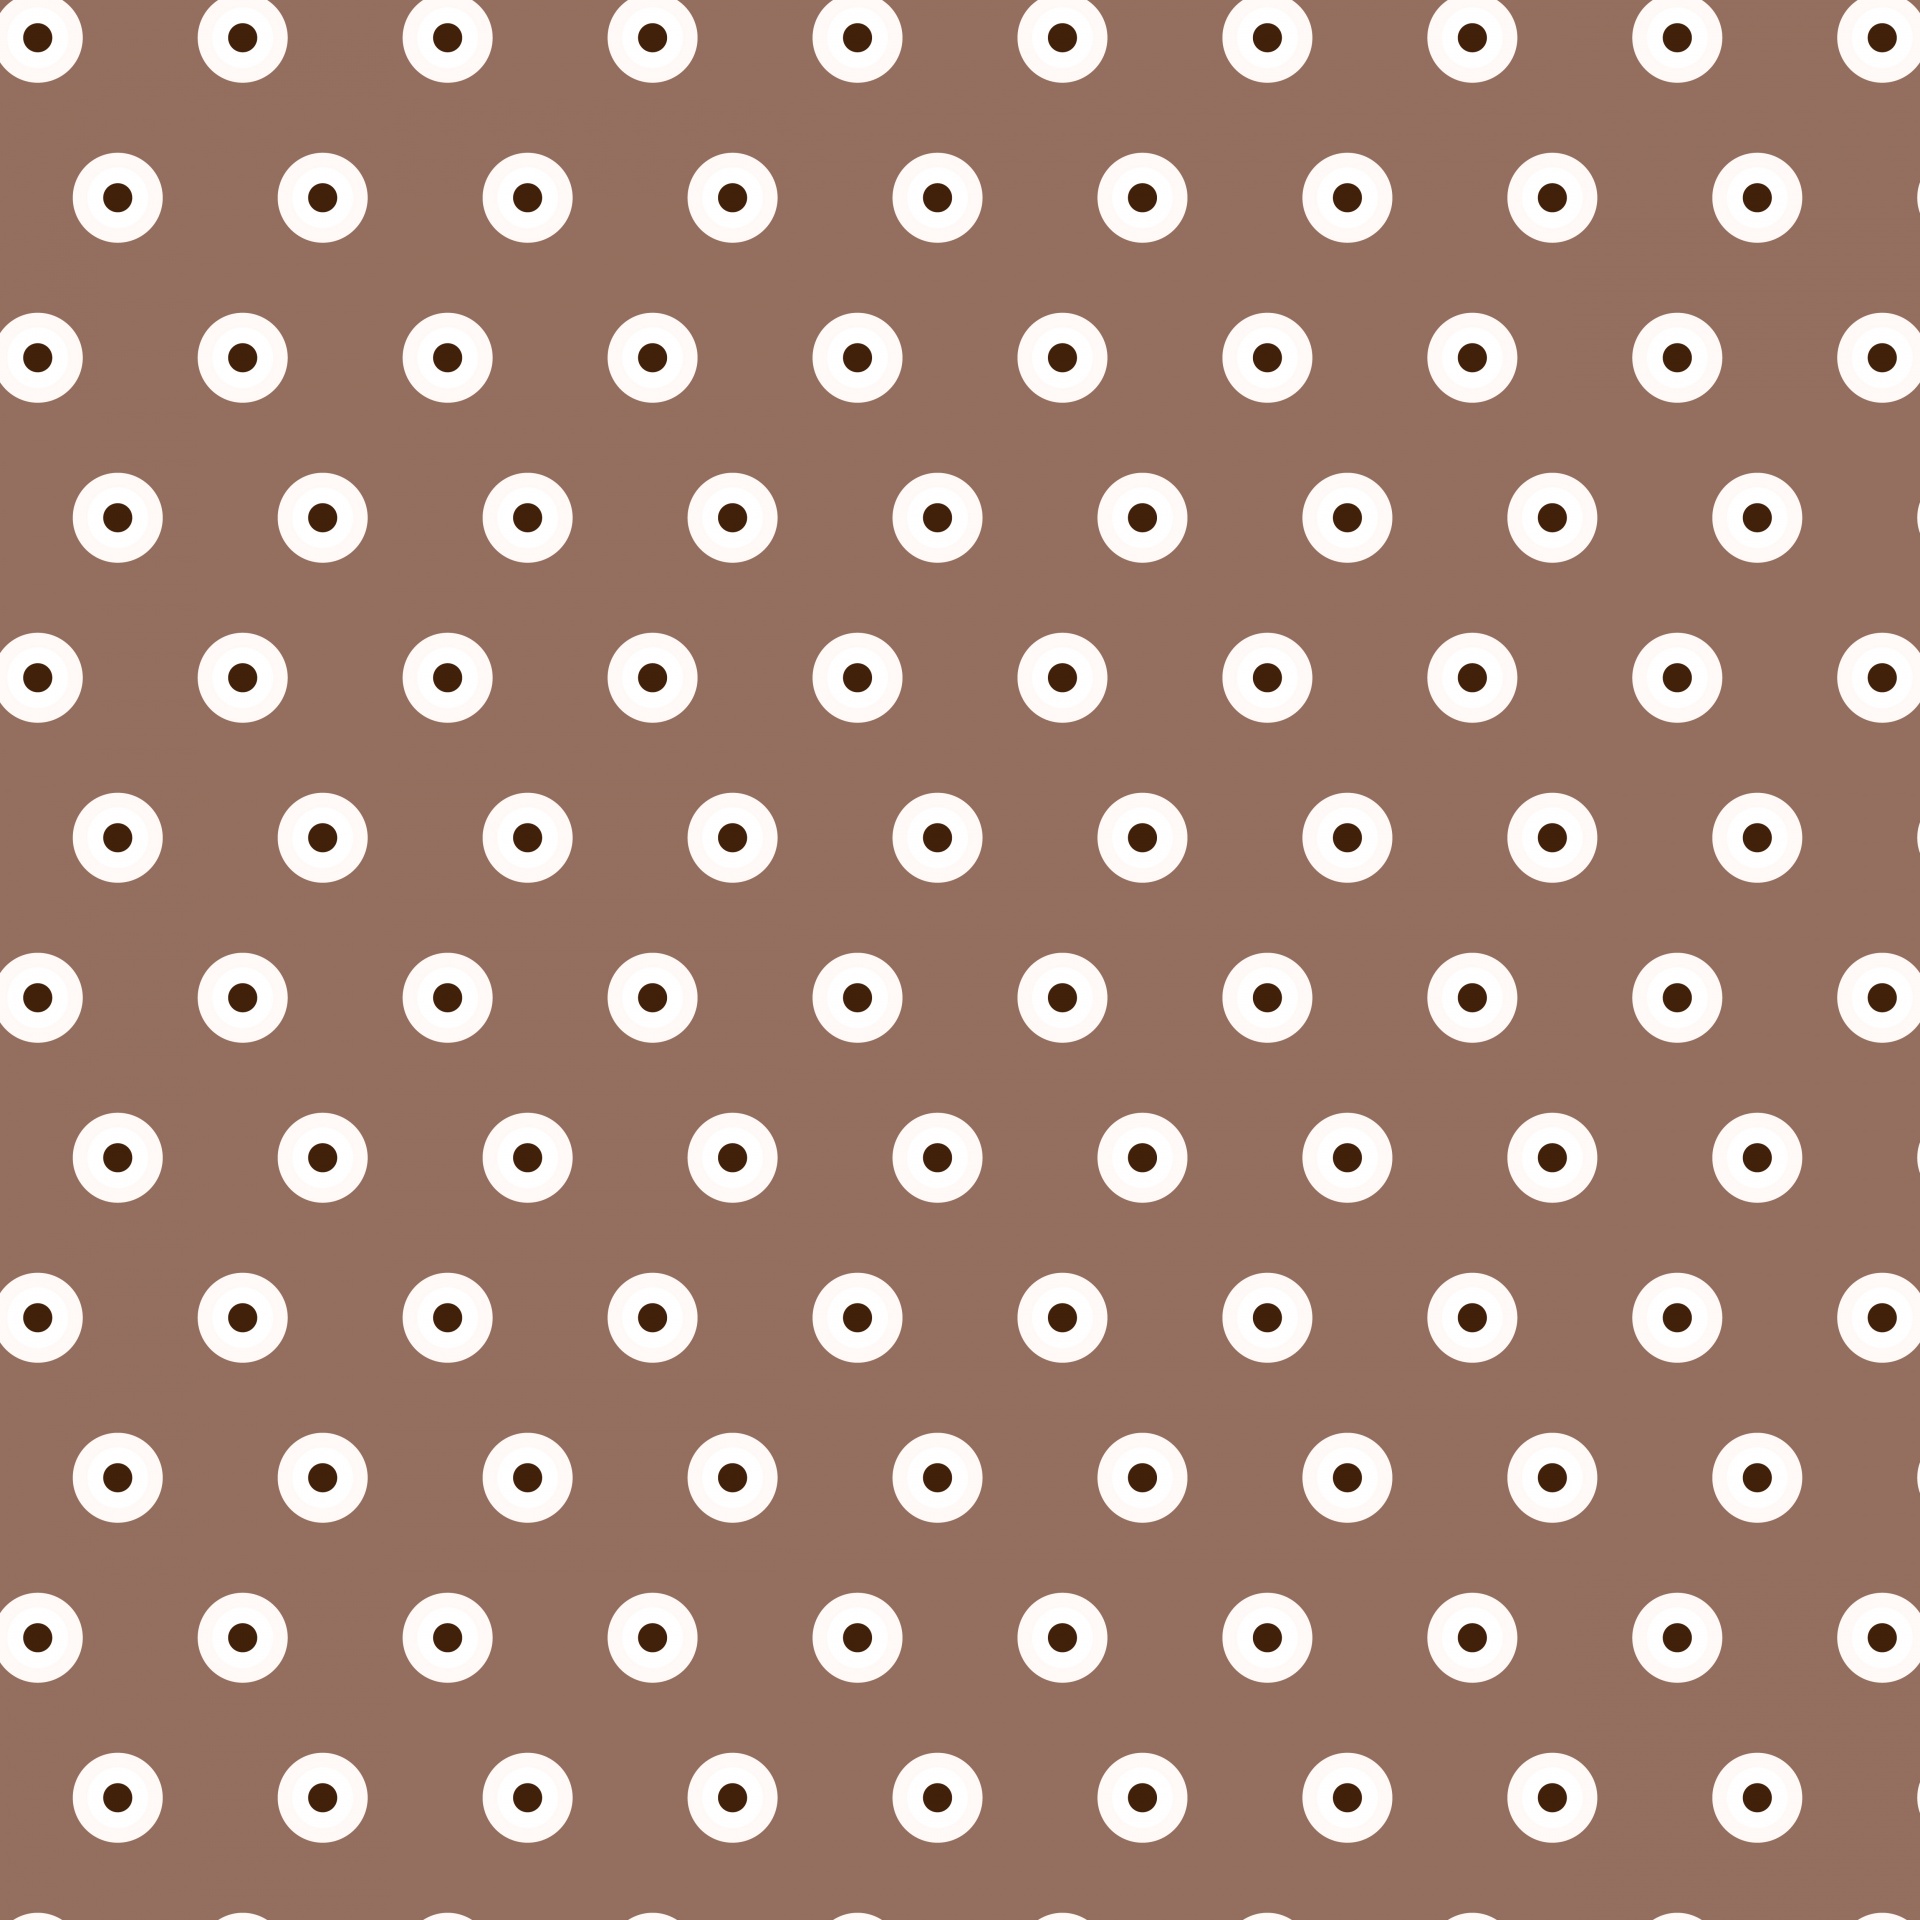 Polka Dots Brown White Wallpaper